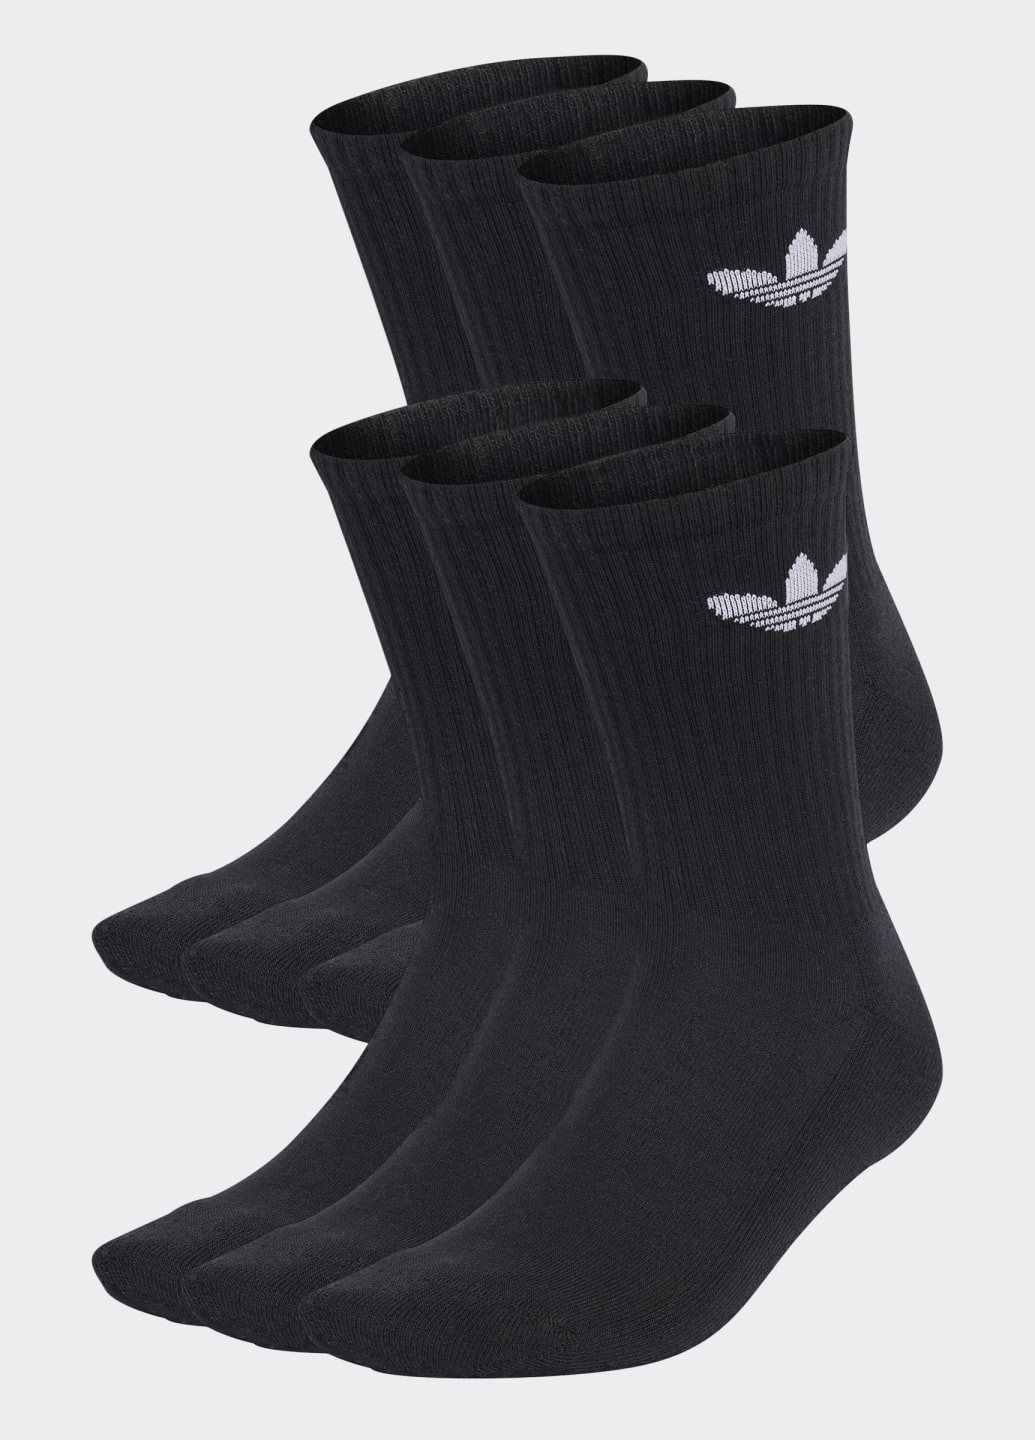 Шість пар шкарпеток Trefoil Cushion Crew adidas (259728632)